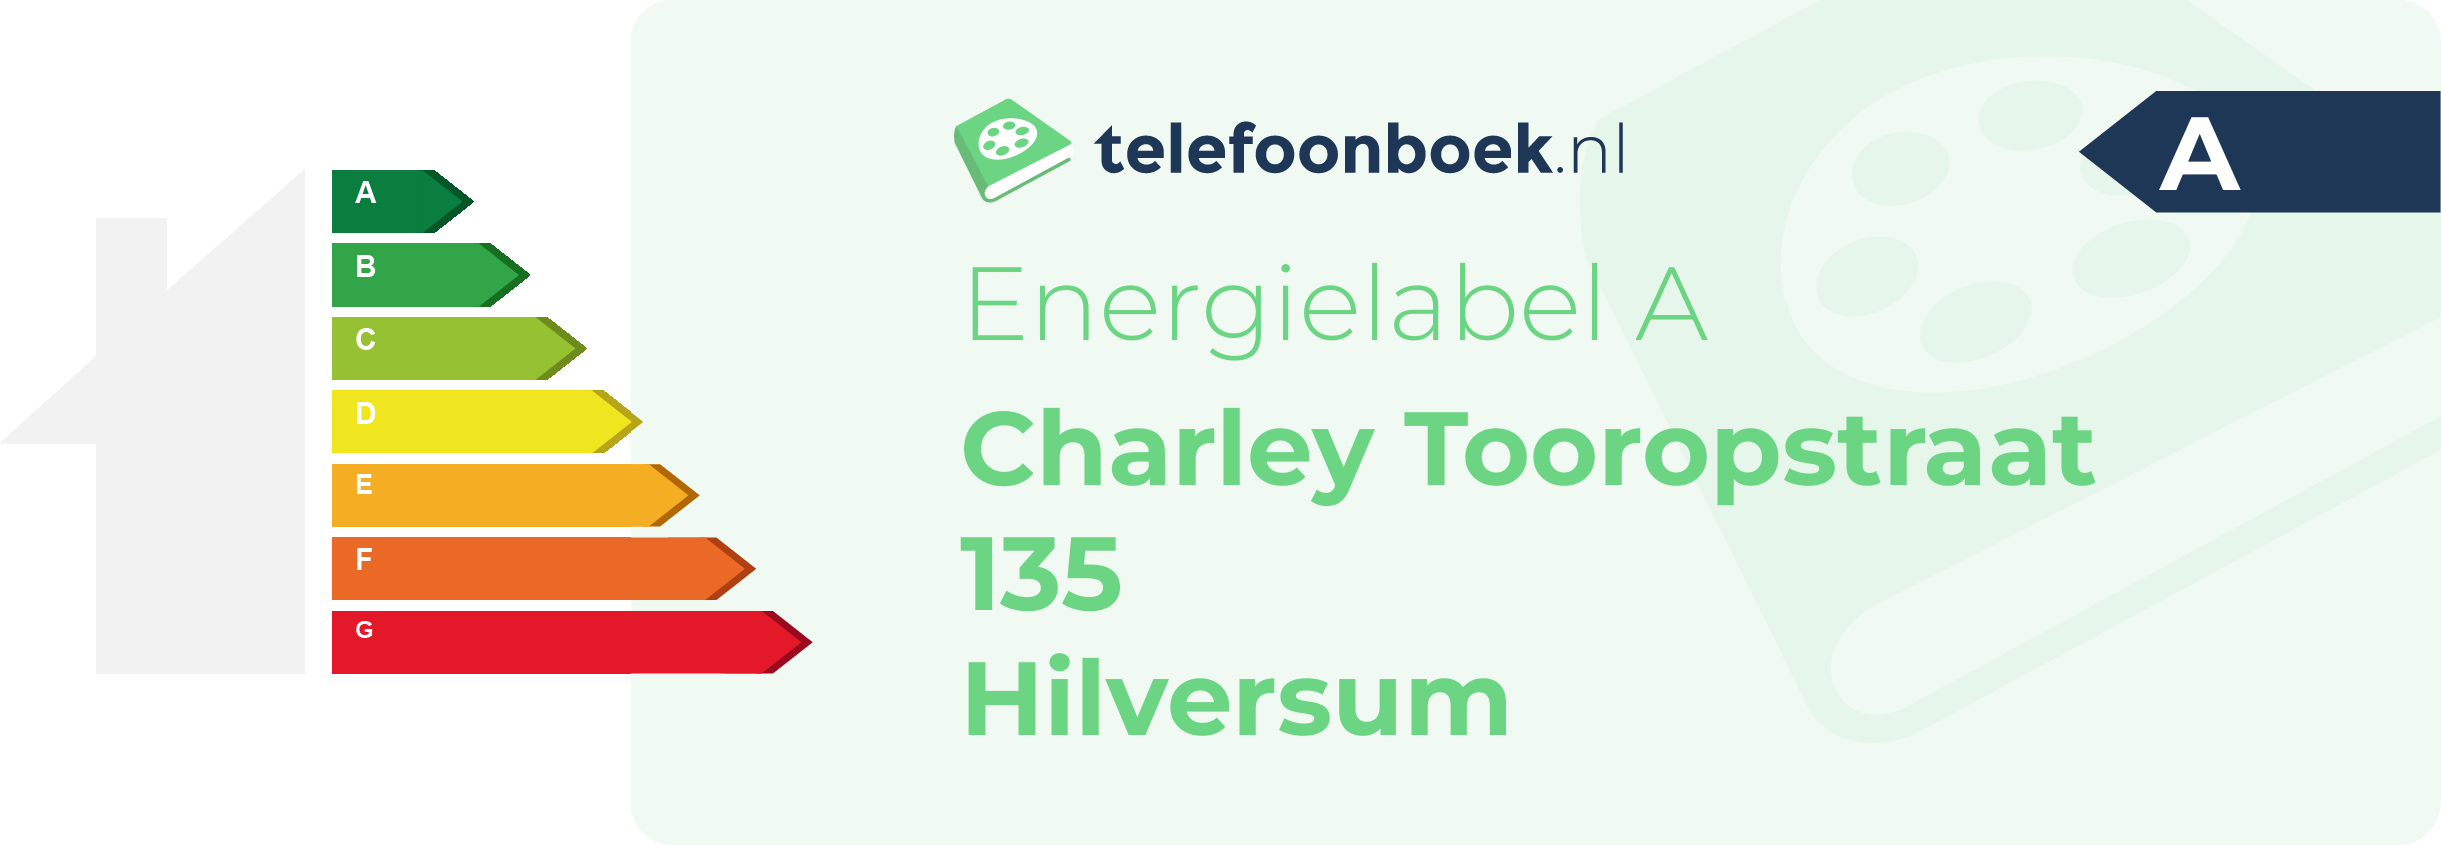 Energielabel Charley Tooropstraat 135 Hilversum